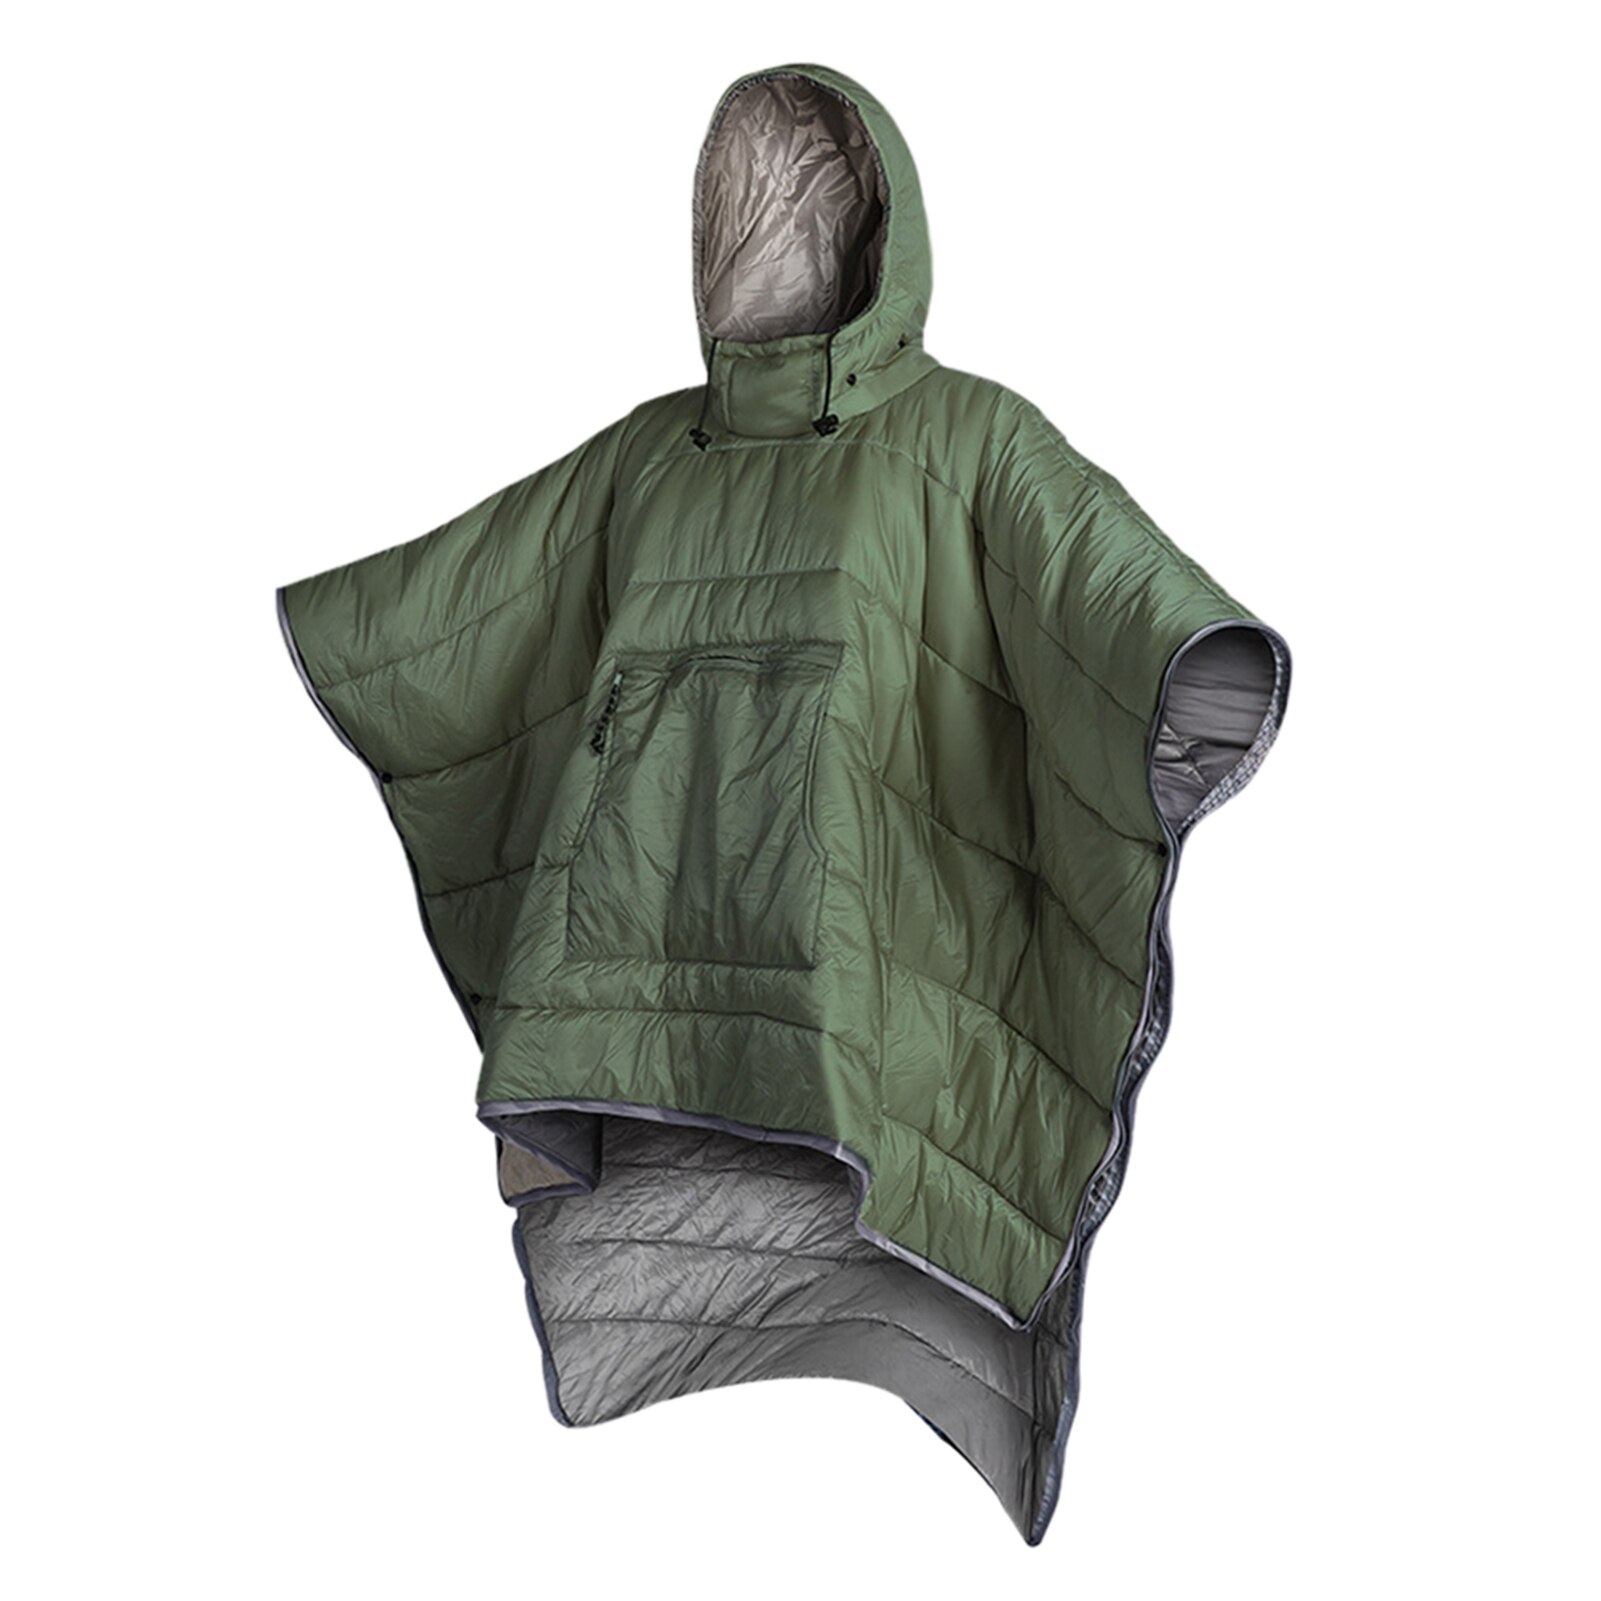 Vandtæt sovepose kappe poncho camping varm sove quilt udendørs camping sove tæppe quilt frakke med hætte: Militærgrøn